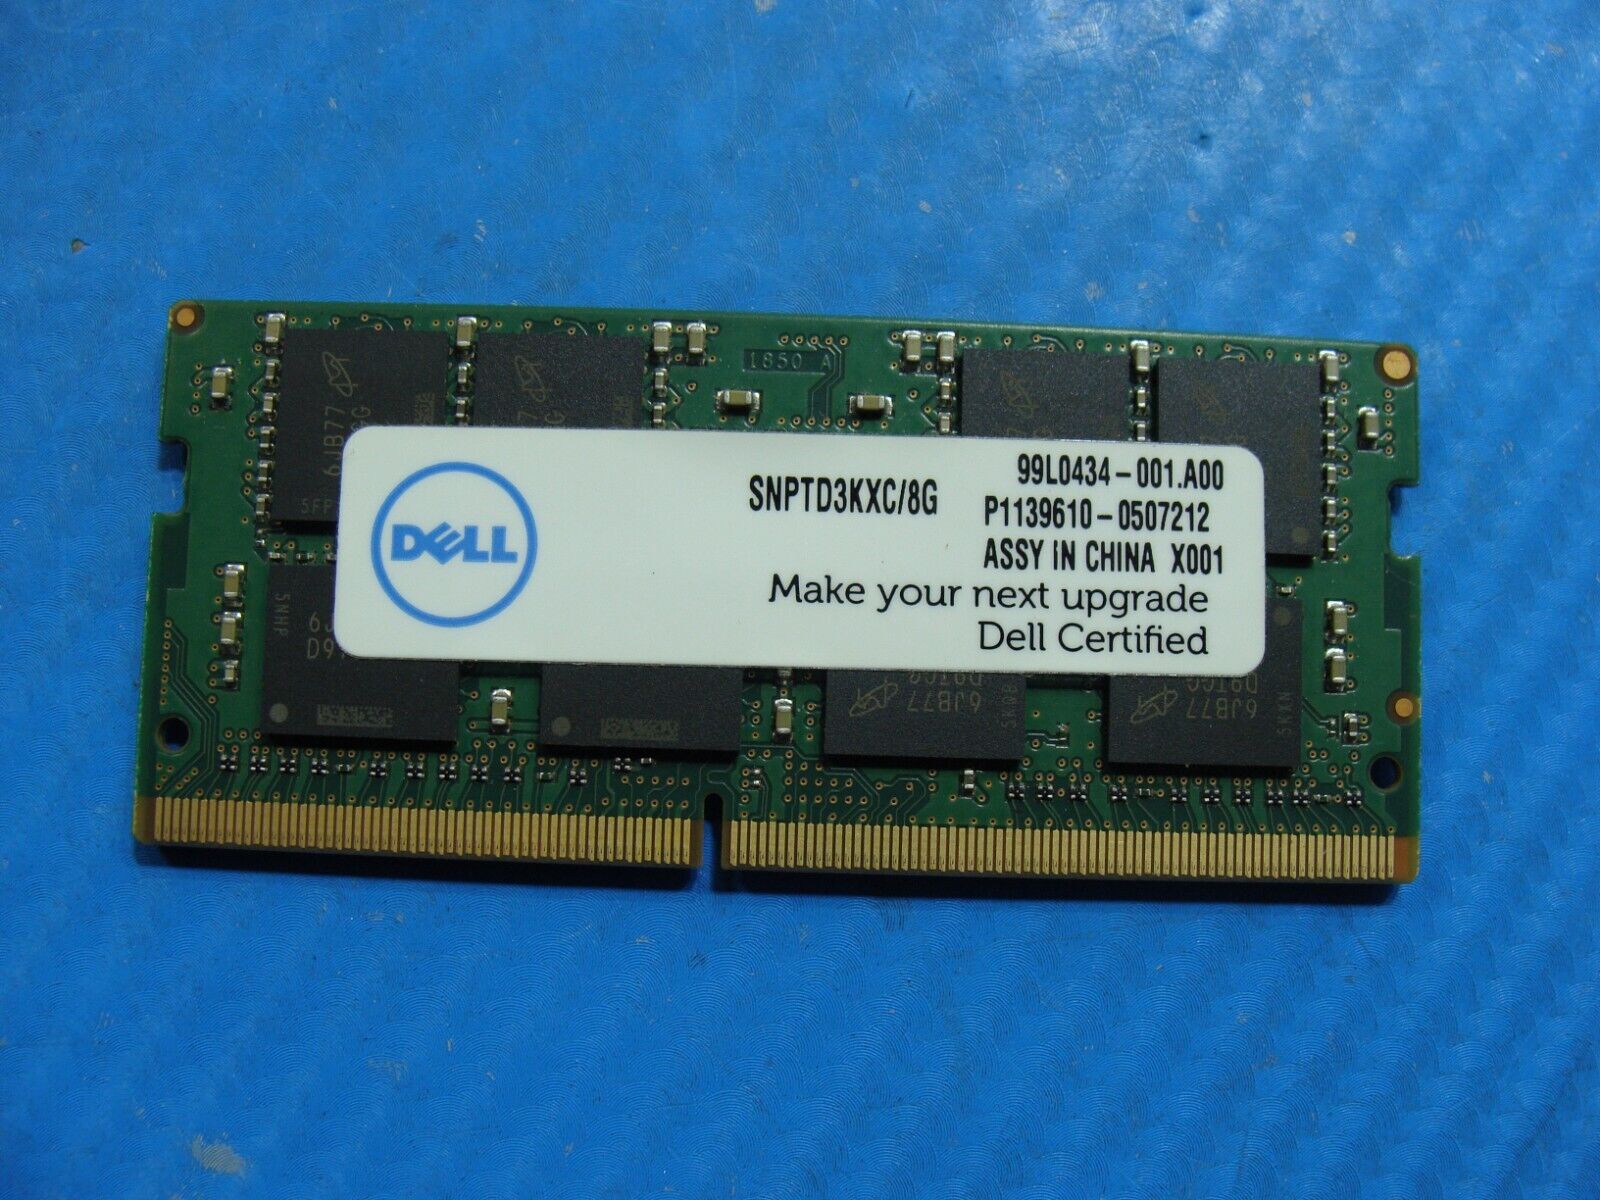 Dell E5570 Micron 8GB 2Rx8 PC4-2133P Memory RAM SO-DIMM MTA16ATF1G64HZ-2G1B1